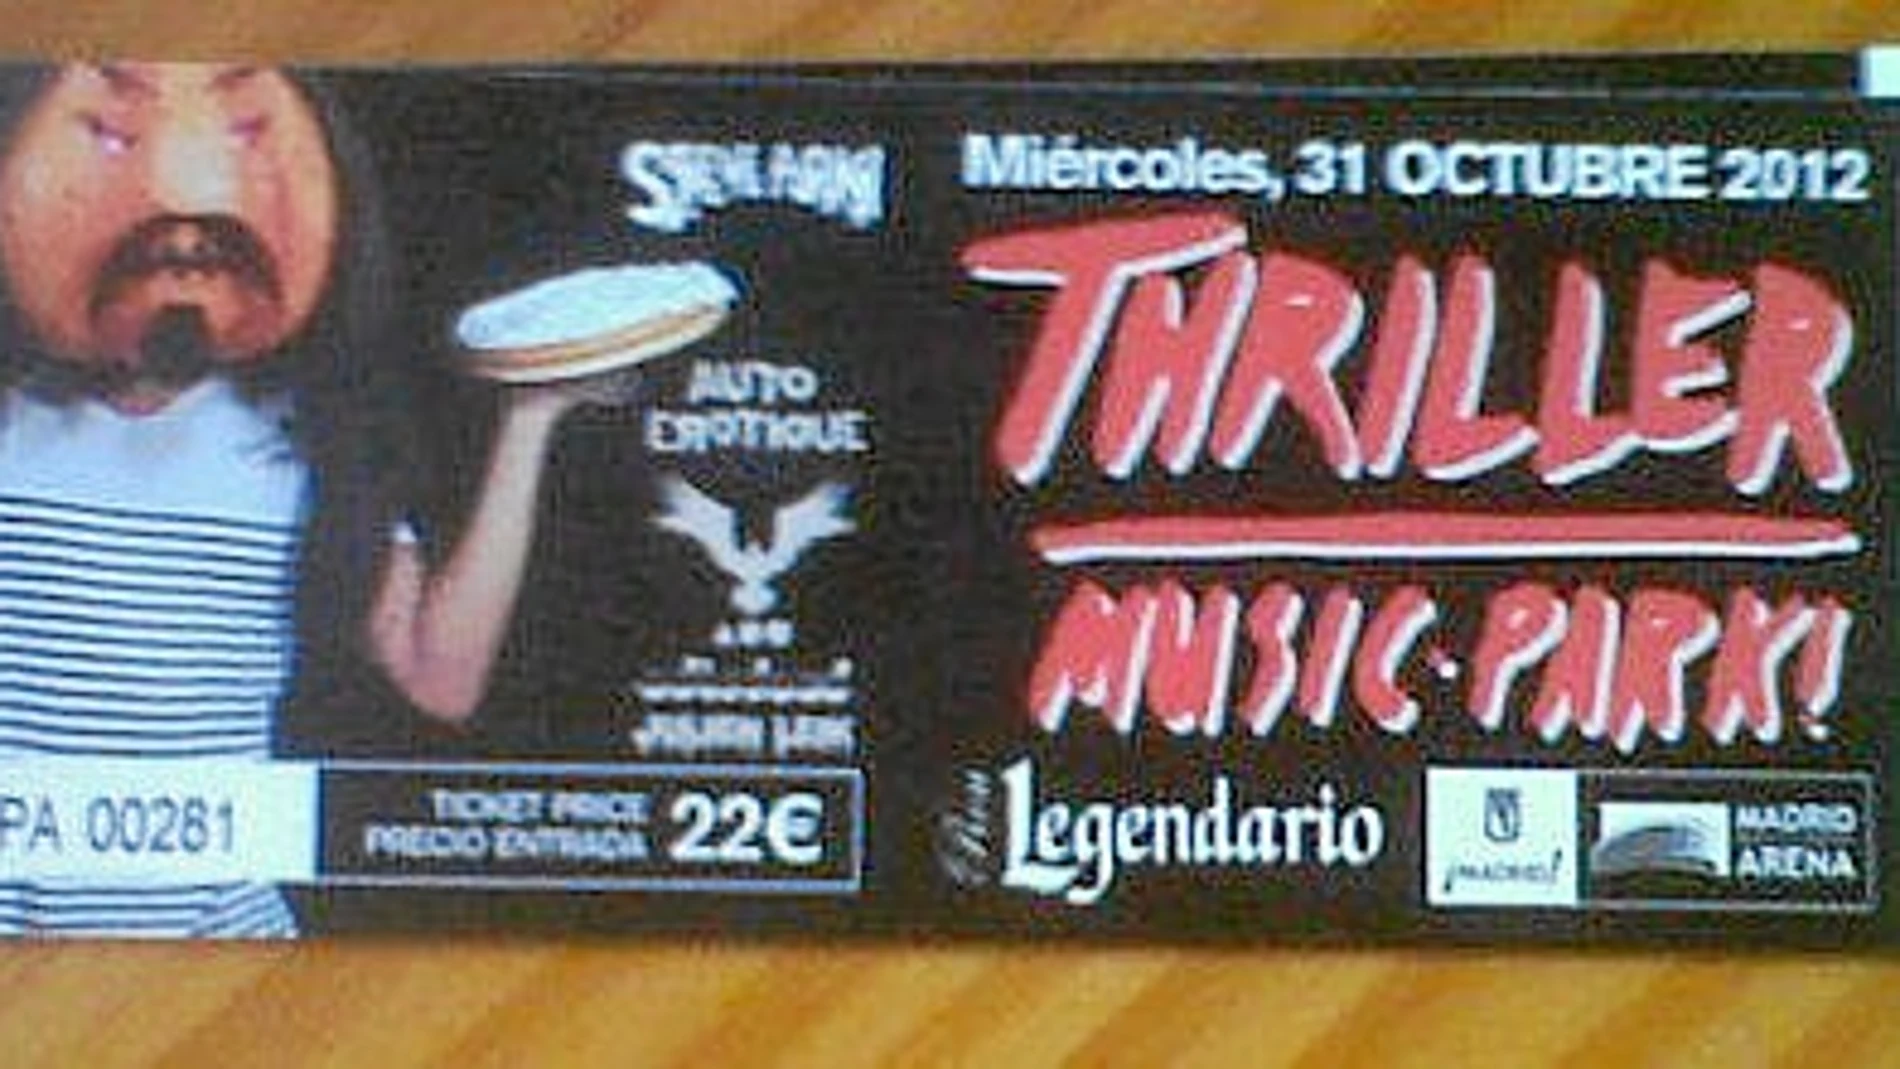 50 euros llegaron a pagar algunos de los asistentes a «Thriller Music Park» que organizó FSM Group en el pabellón Madrid Arena